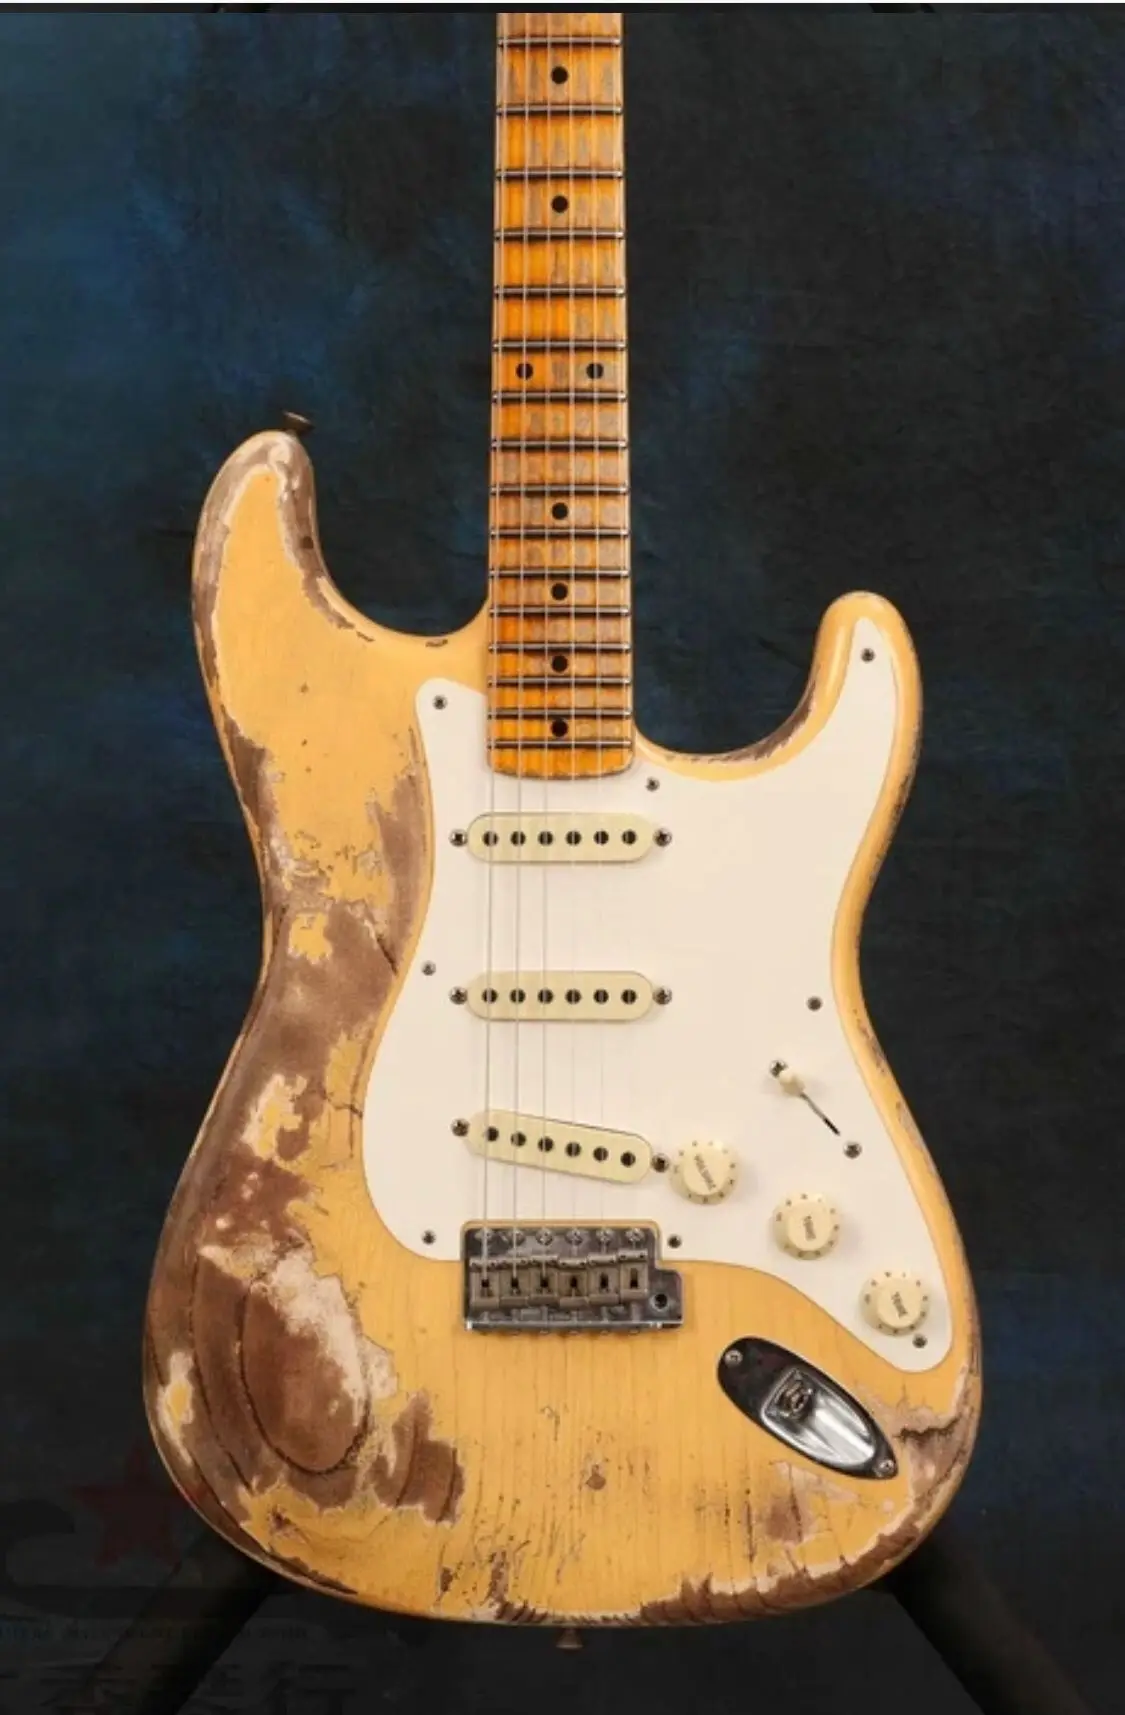 Электрическая гитара с реликсами кленовый гриф ручной работы гитара реликс руками